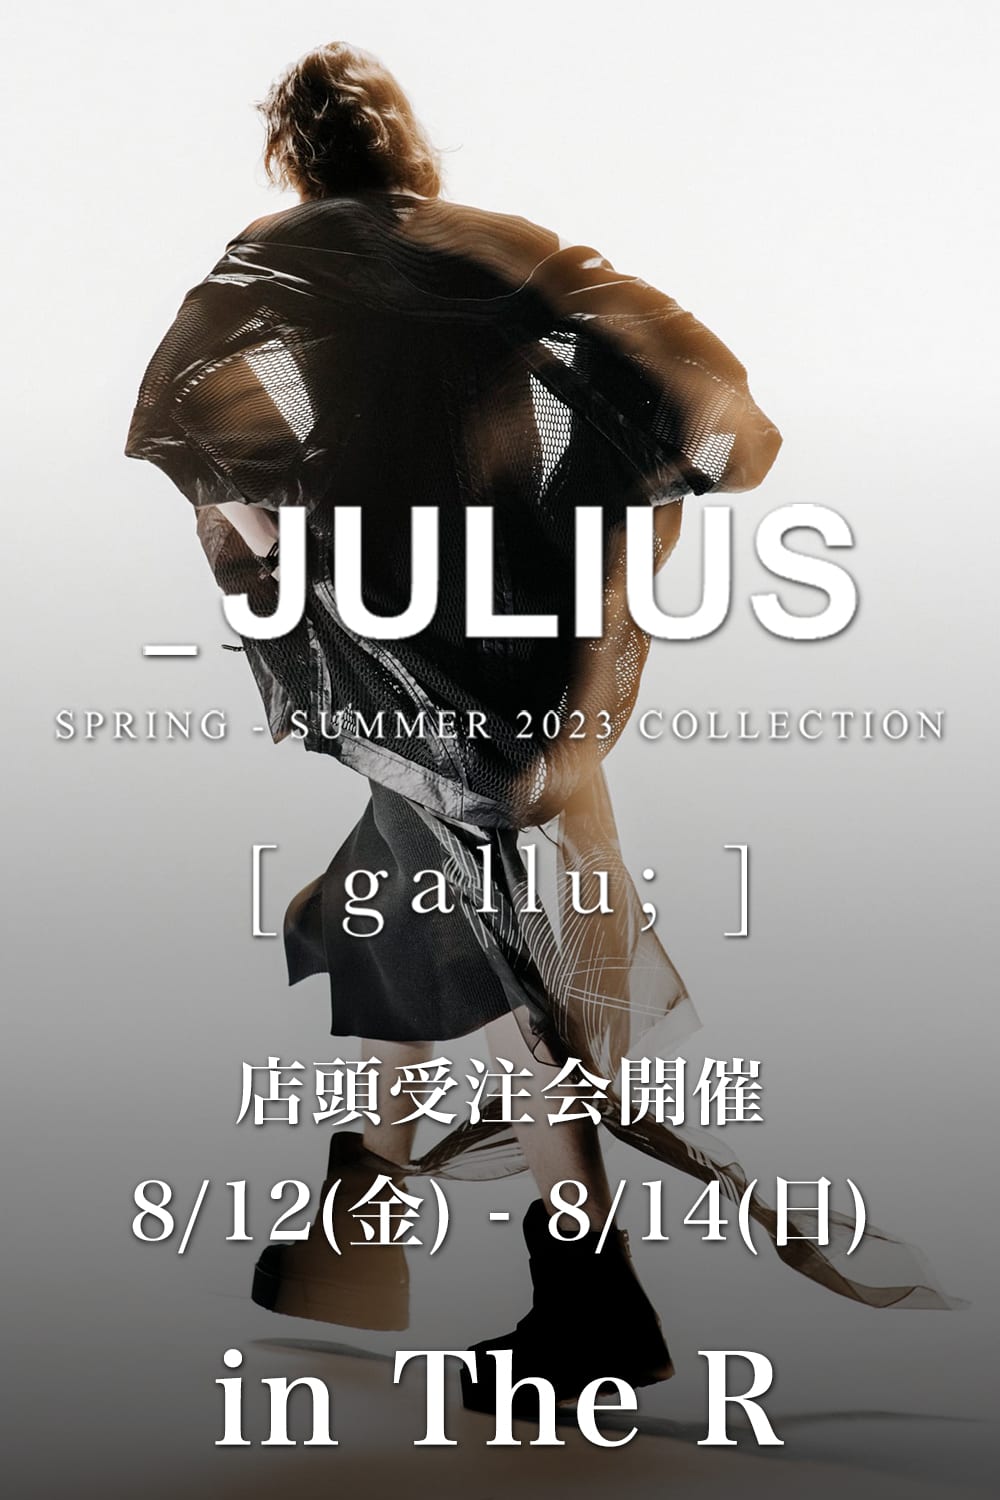 [イベント情報] JULIUS 23SS(春夏) Collection 店頭受注会のご案内。